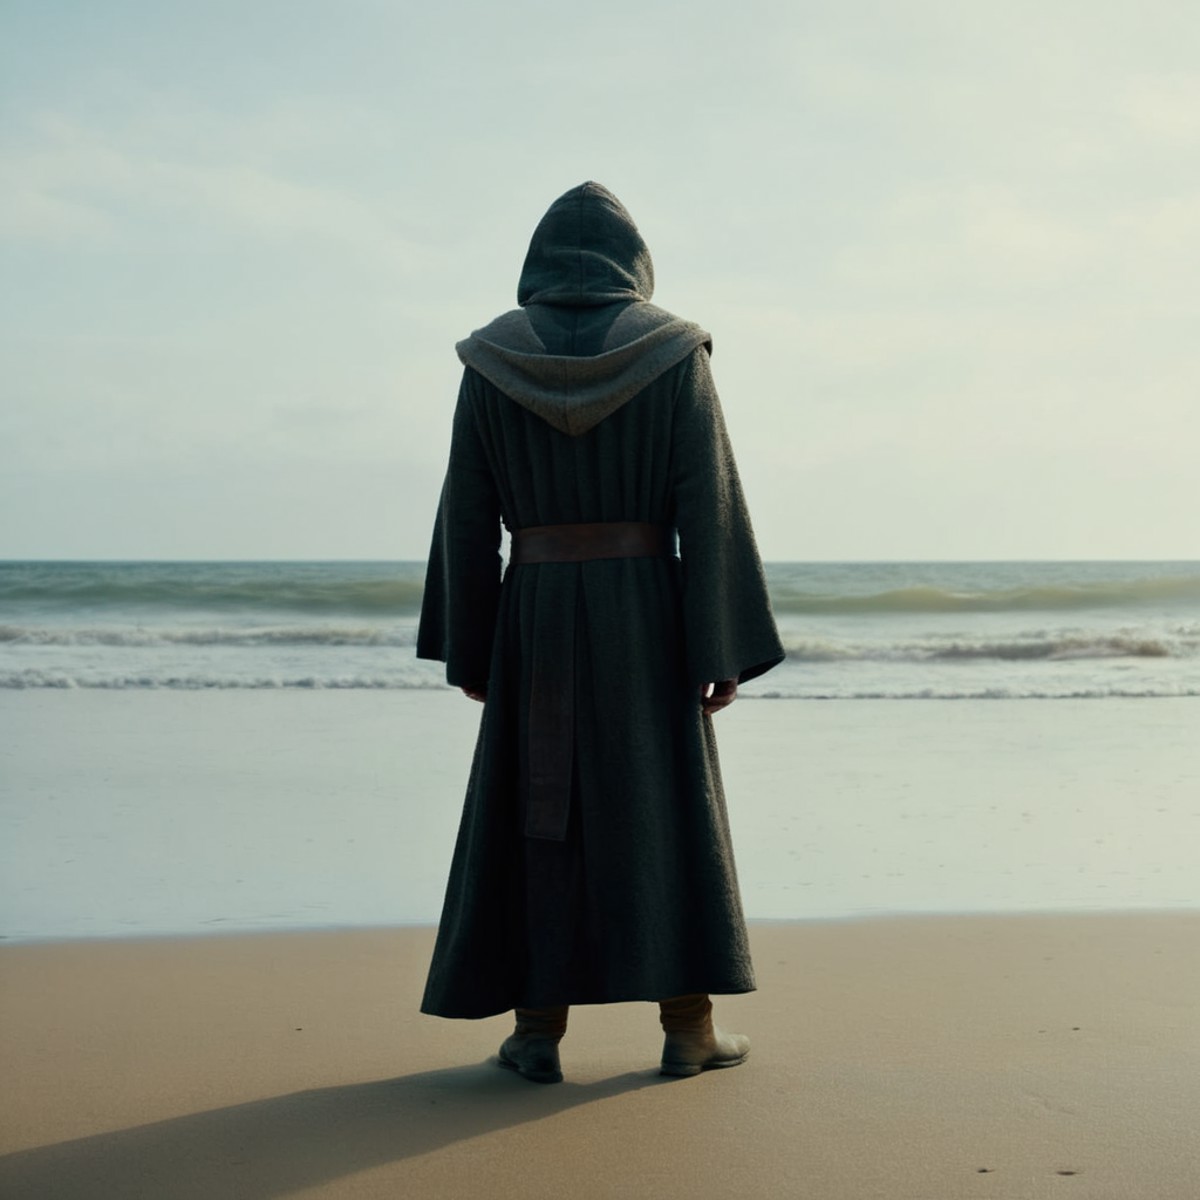 cinematic film still of  <lora:Luke Skywalker:1.2>
Luke Skywalker an old man in a hooded robe standing on a beach in star ...